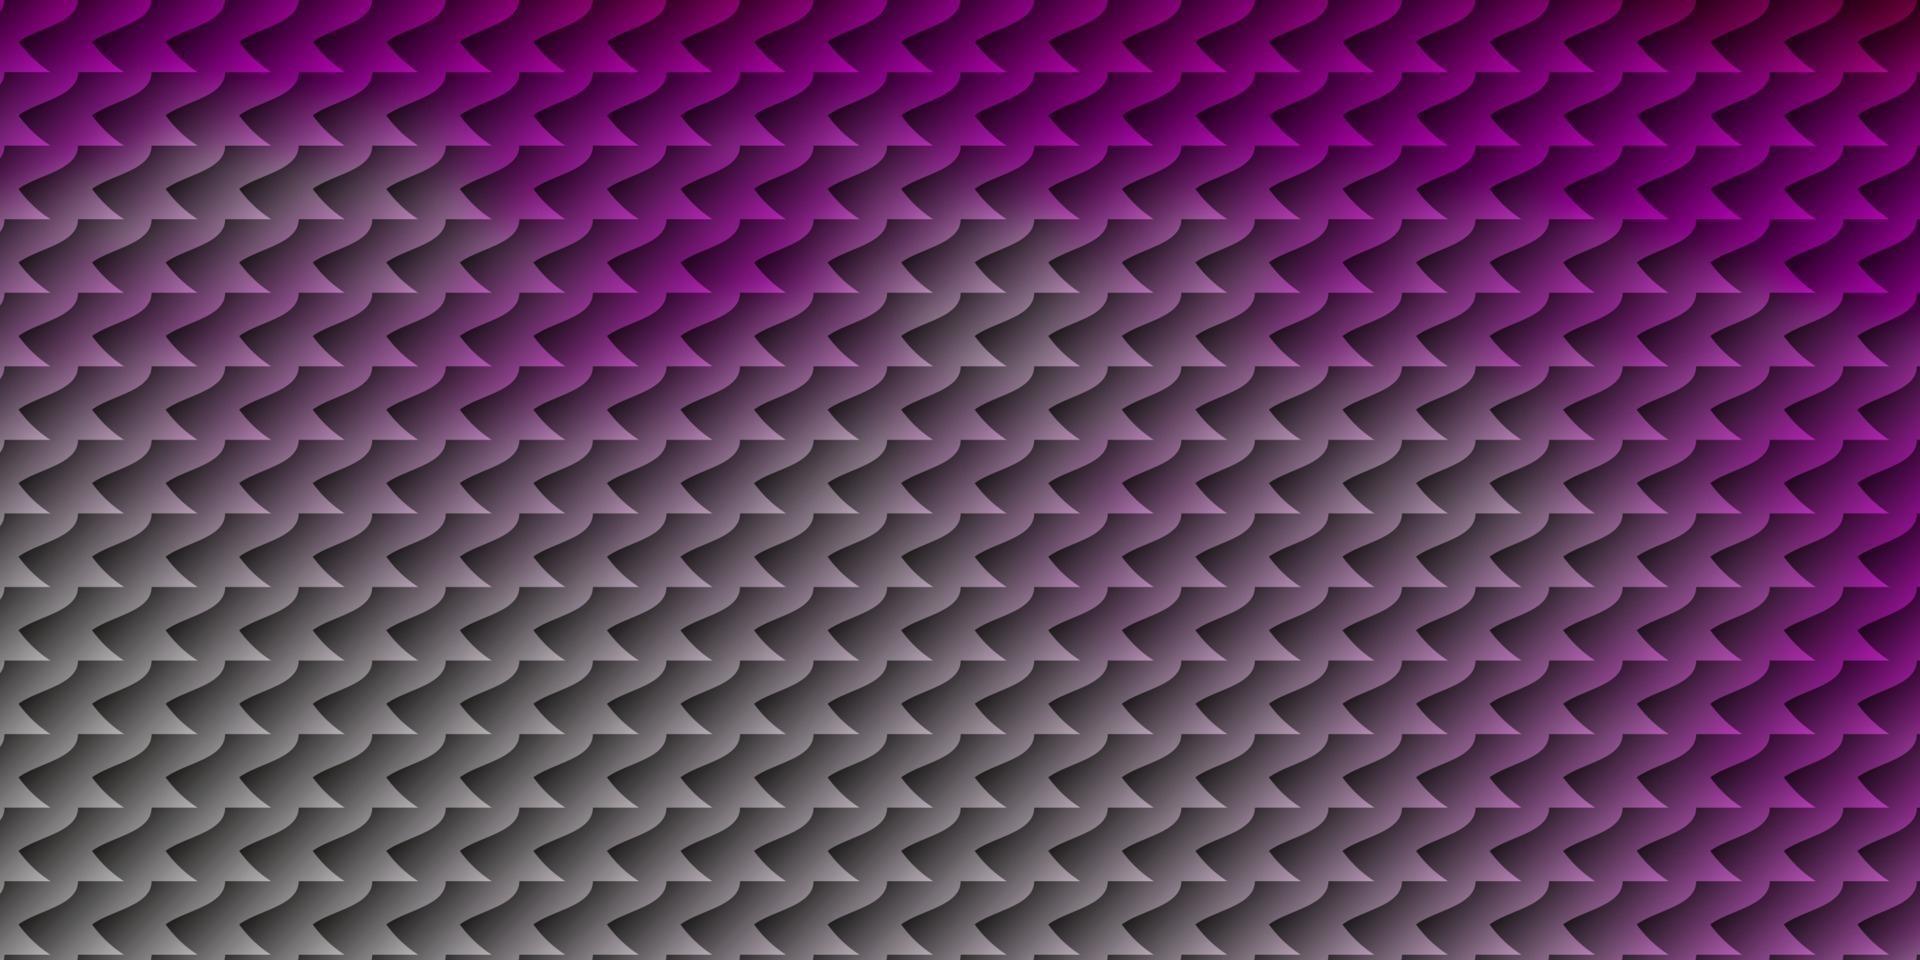 layout de vetor rosa claro com linhas, retângulos.